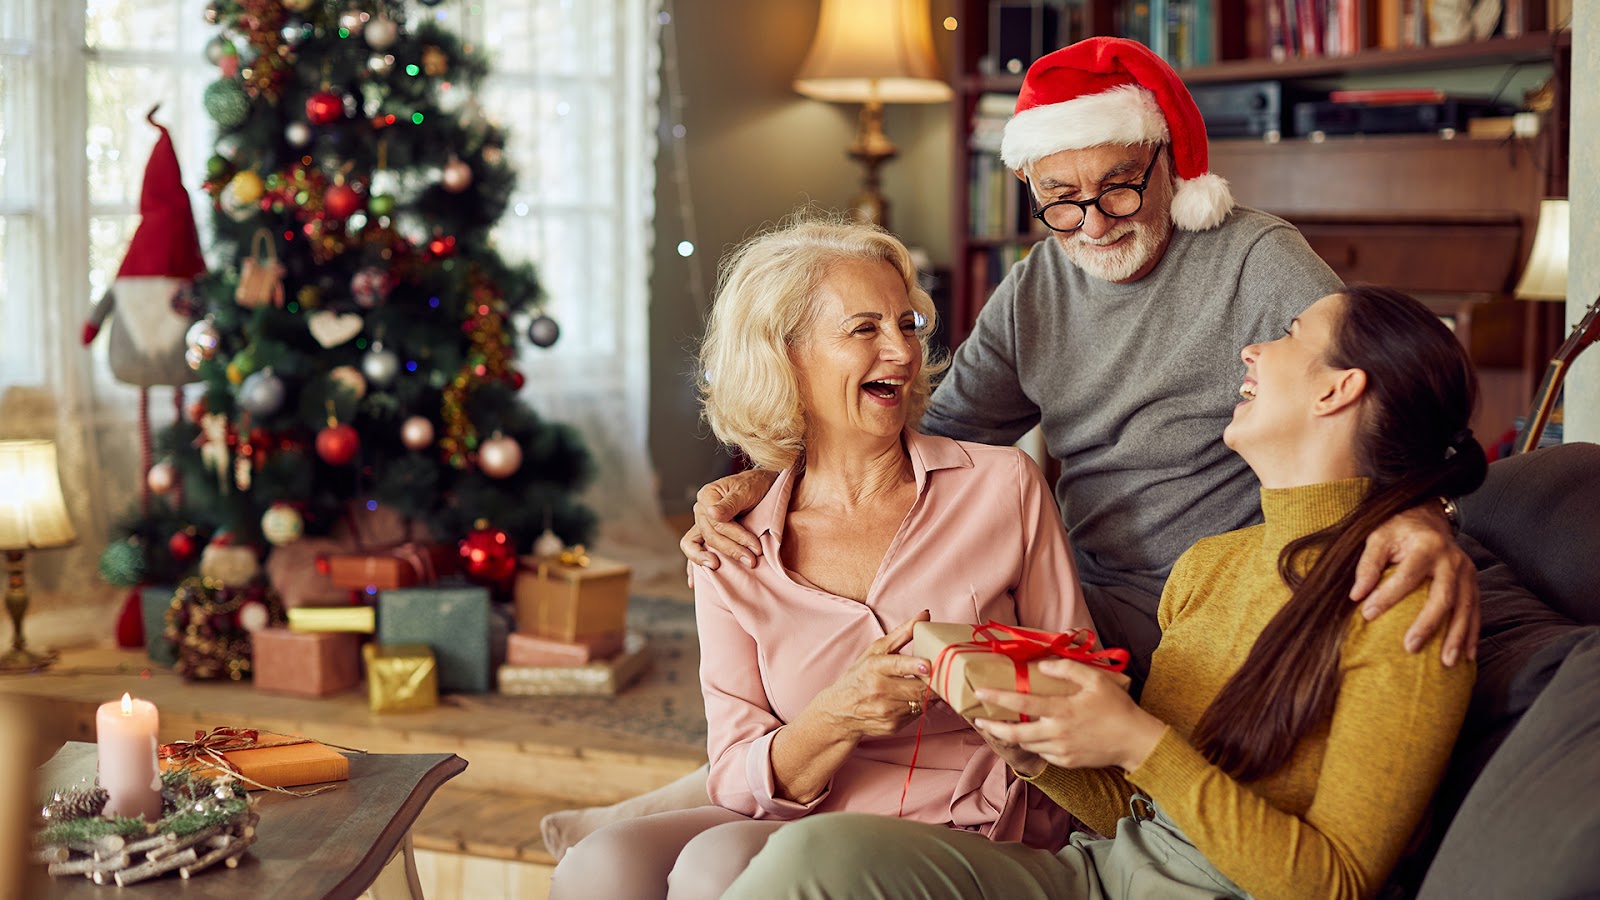 Christmas gift ideas for senior citizens